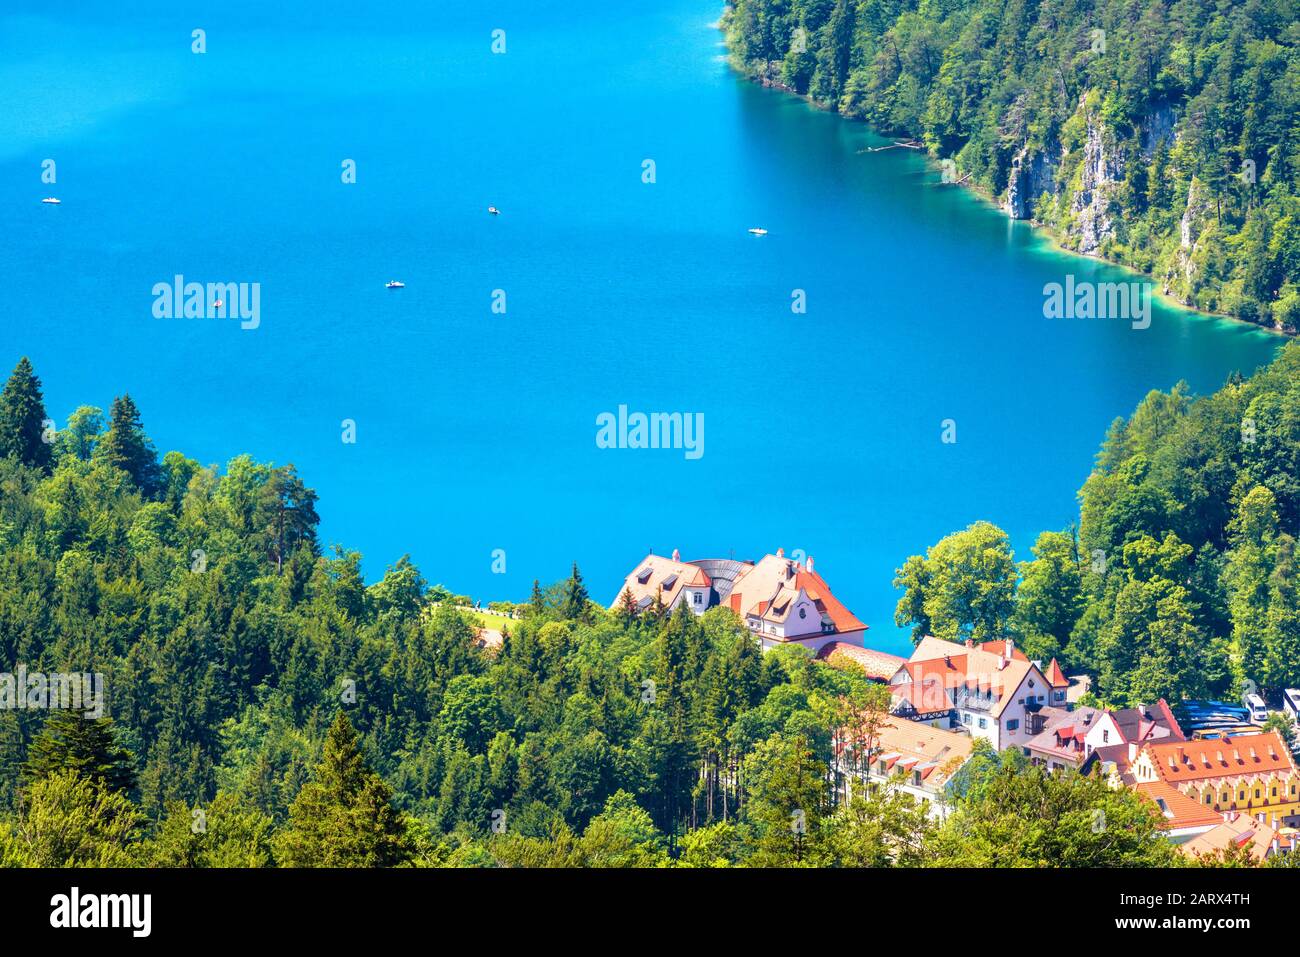 Paysage des montagnes alpines, Bavière, Allemagne. Paysage de l'eau bleue du lac Alpsee en été. Beau paysage avec Hohenschwangau village en vert f Banque D'Images